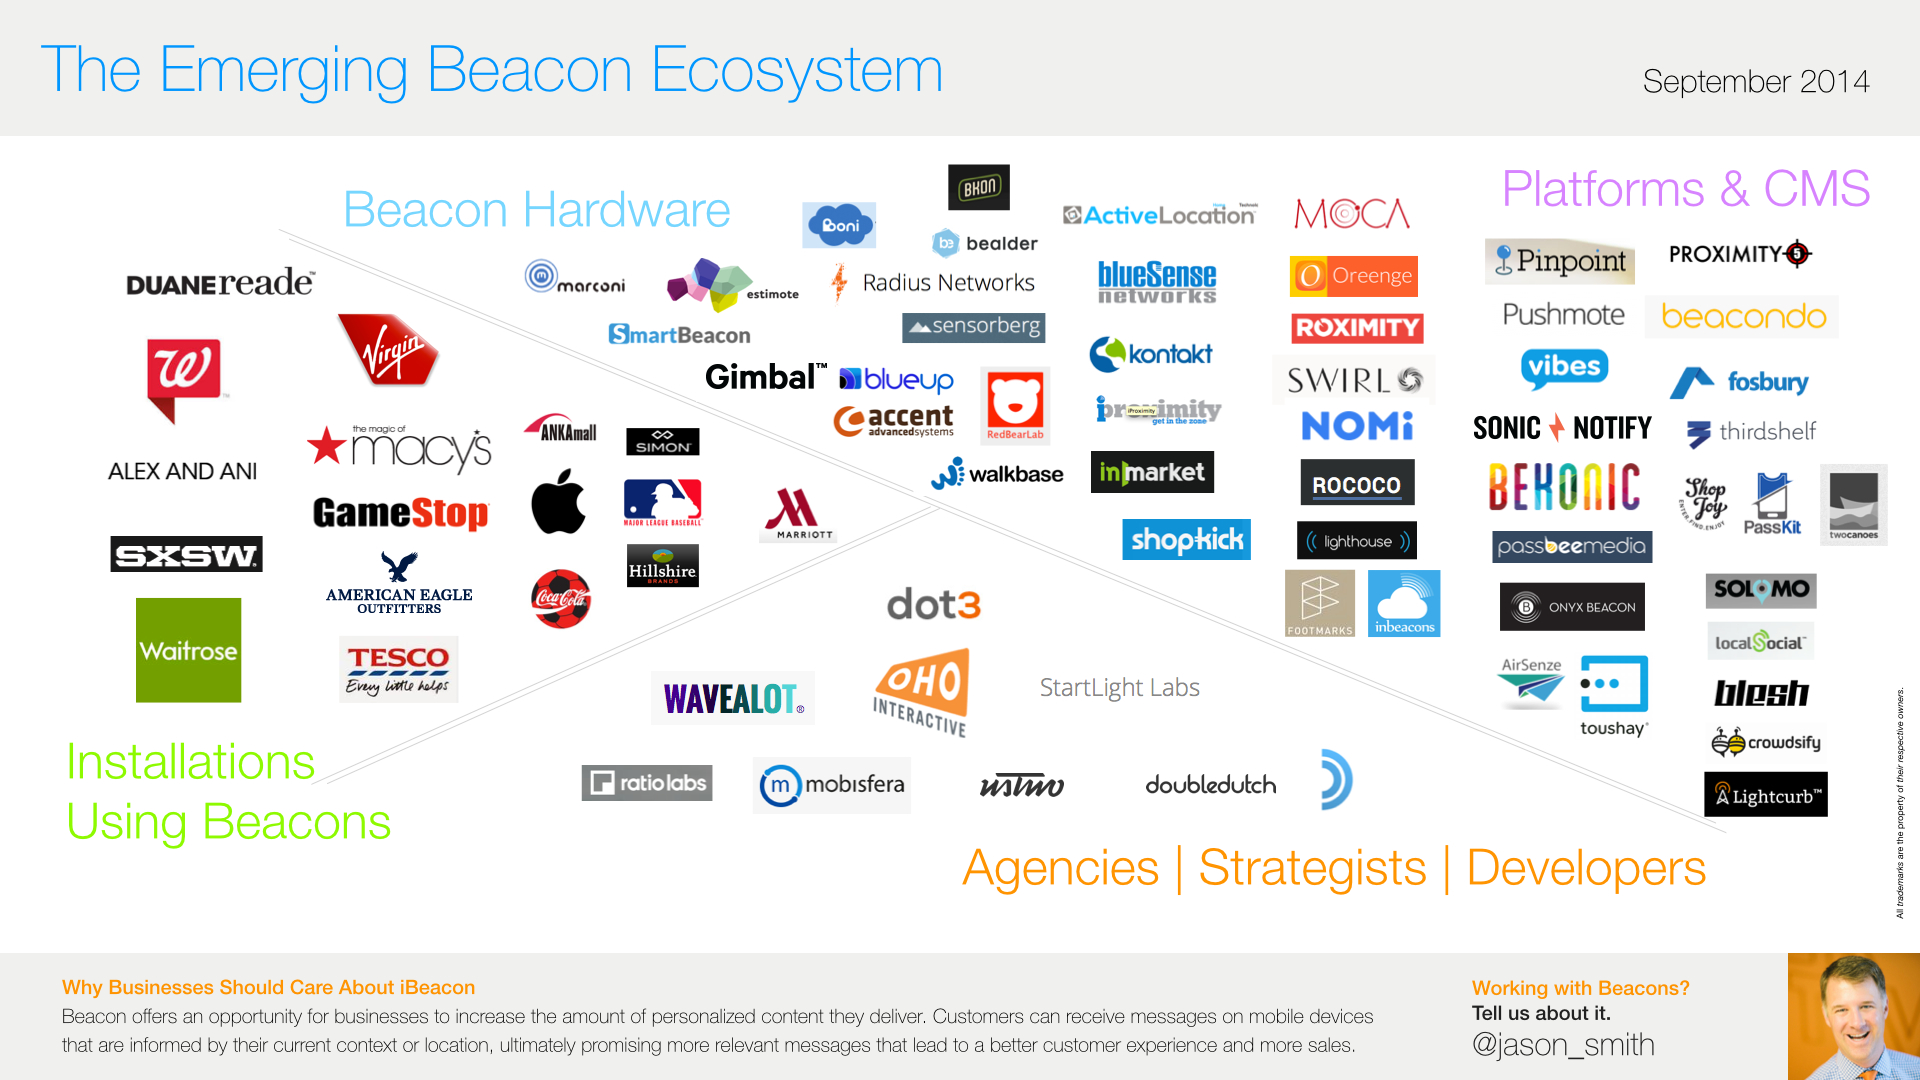 The iBeacon ecosystem